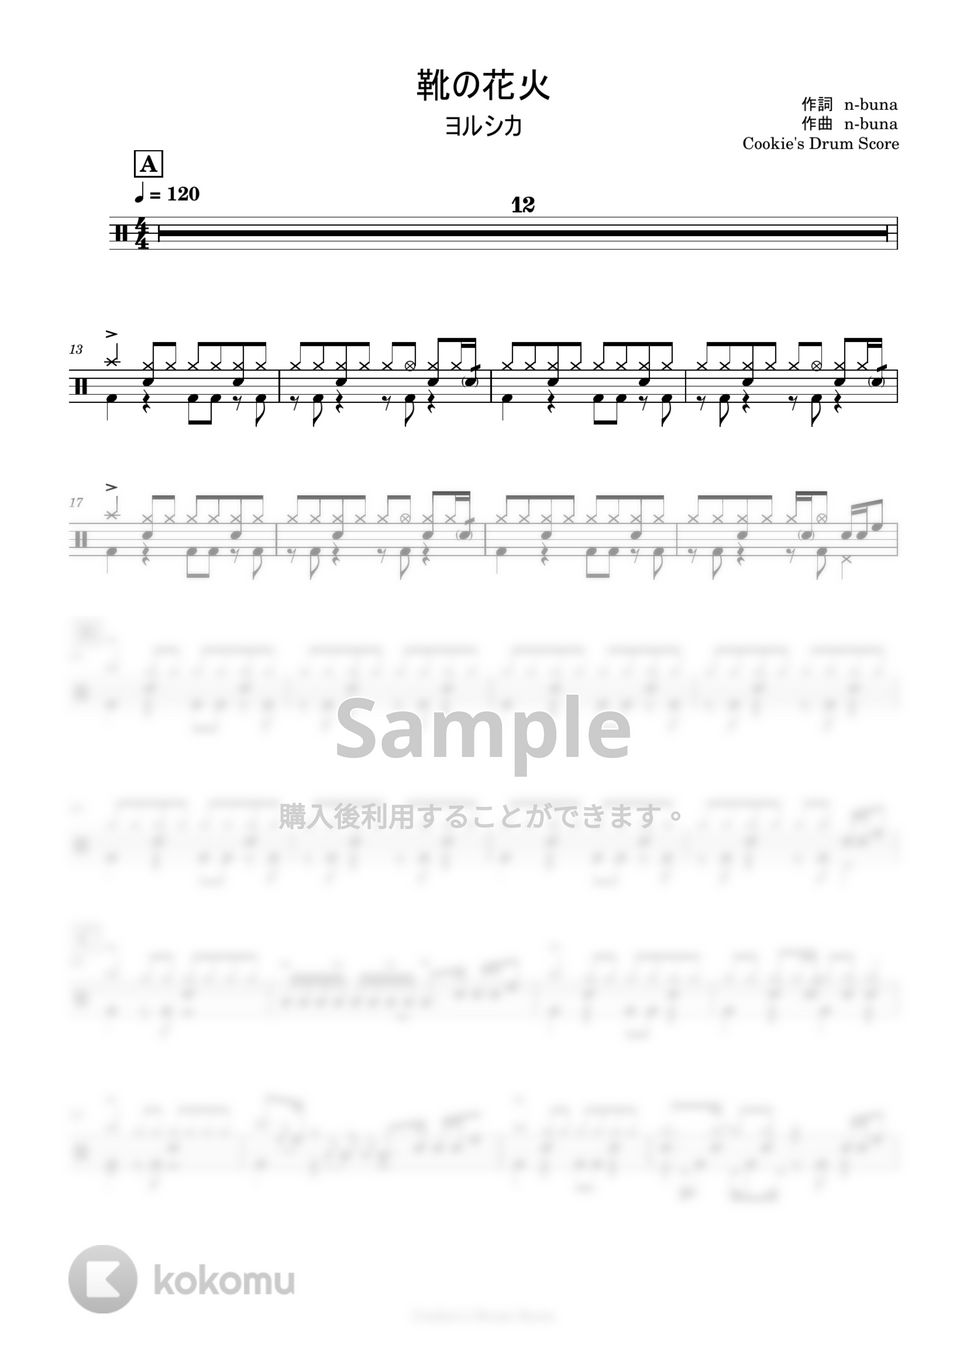 ヨルシカ - 靴の花火 by Cookie's Drum Score